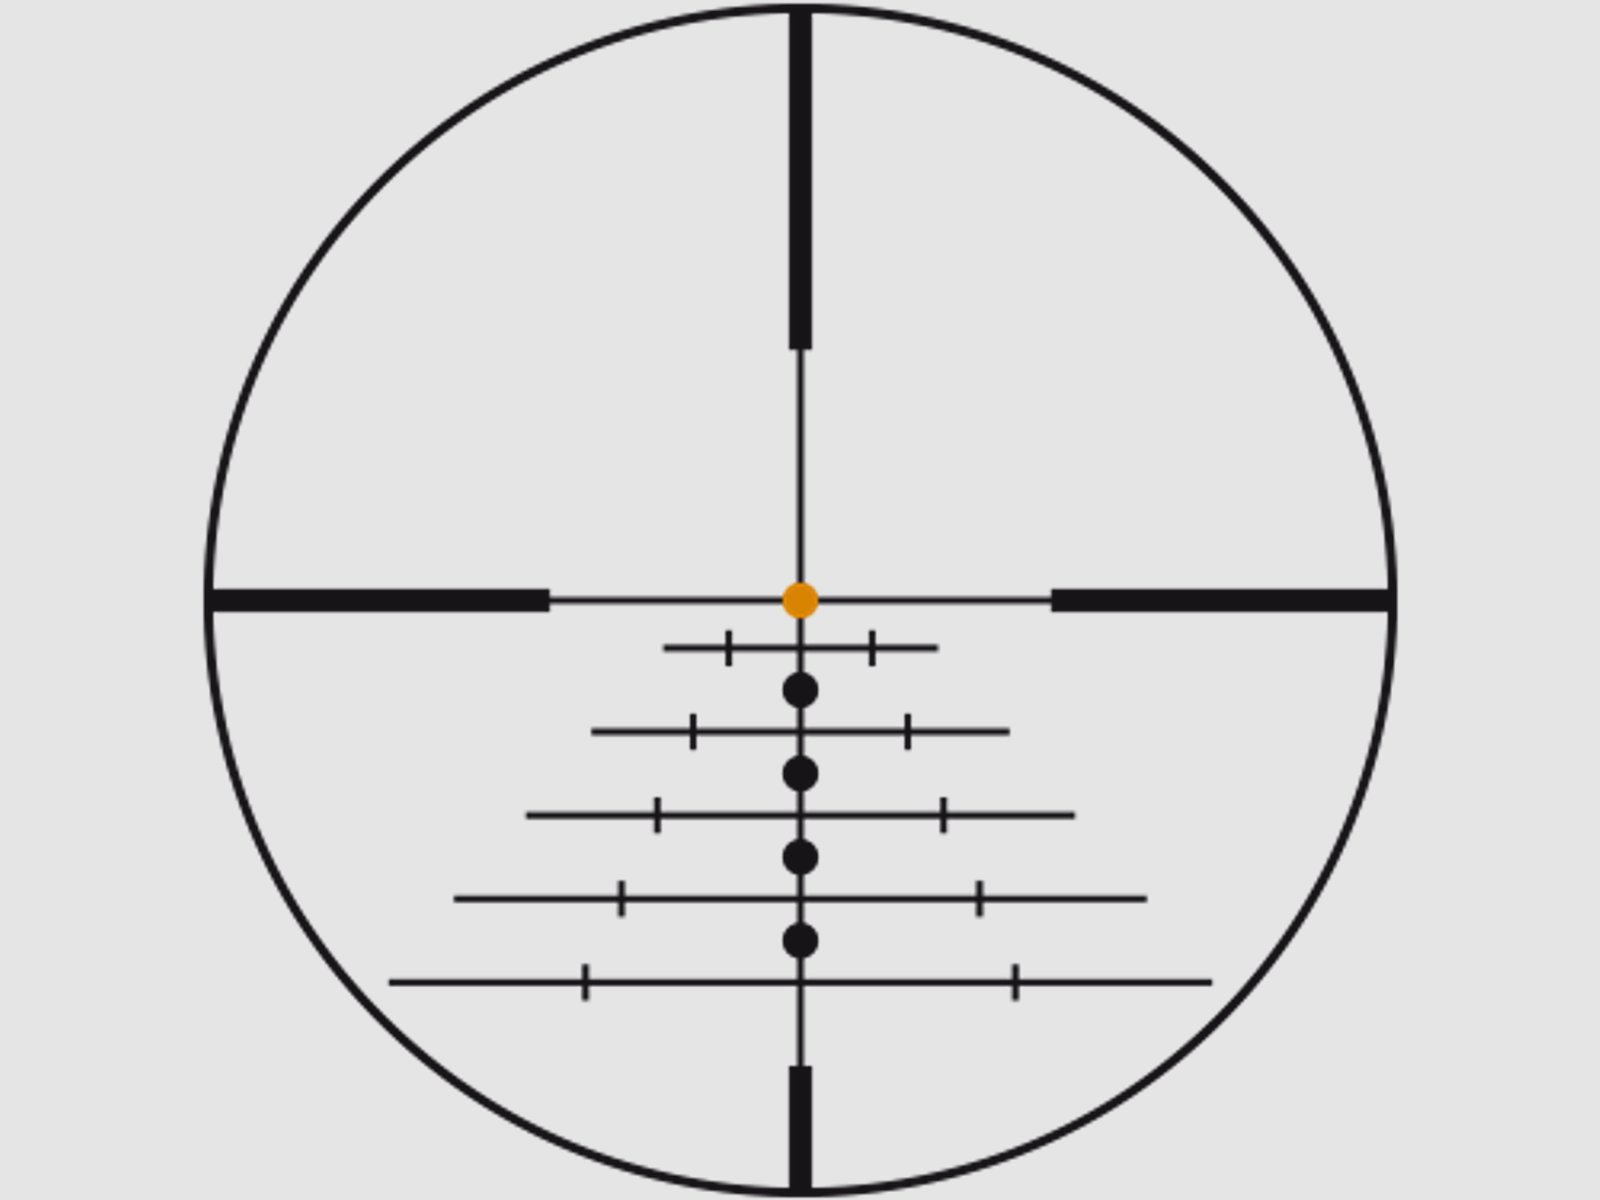 SWAROVSKI Zielfernrohr mit Leuchtabsehen 2,3-18x56 P Z8i SR Abs. BRX-I